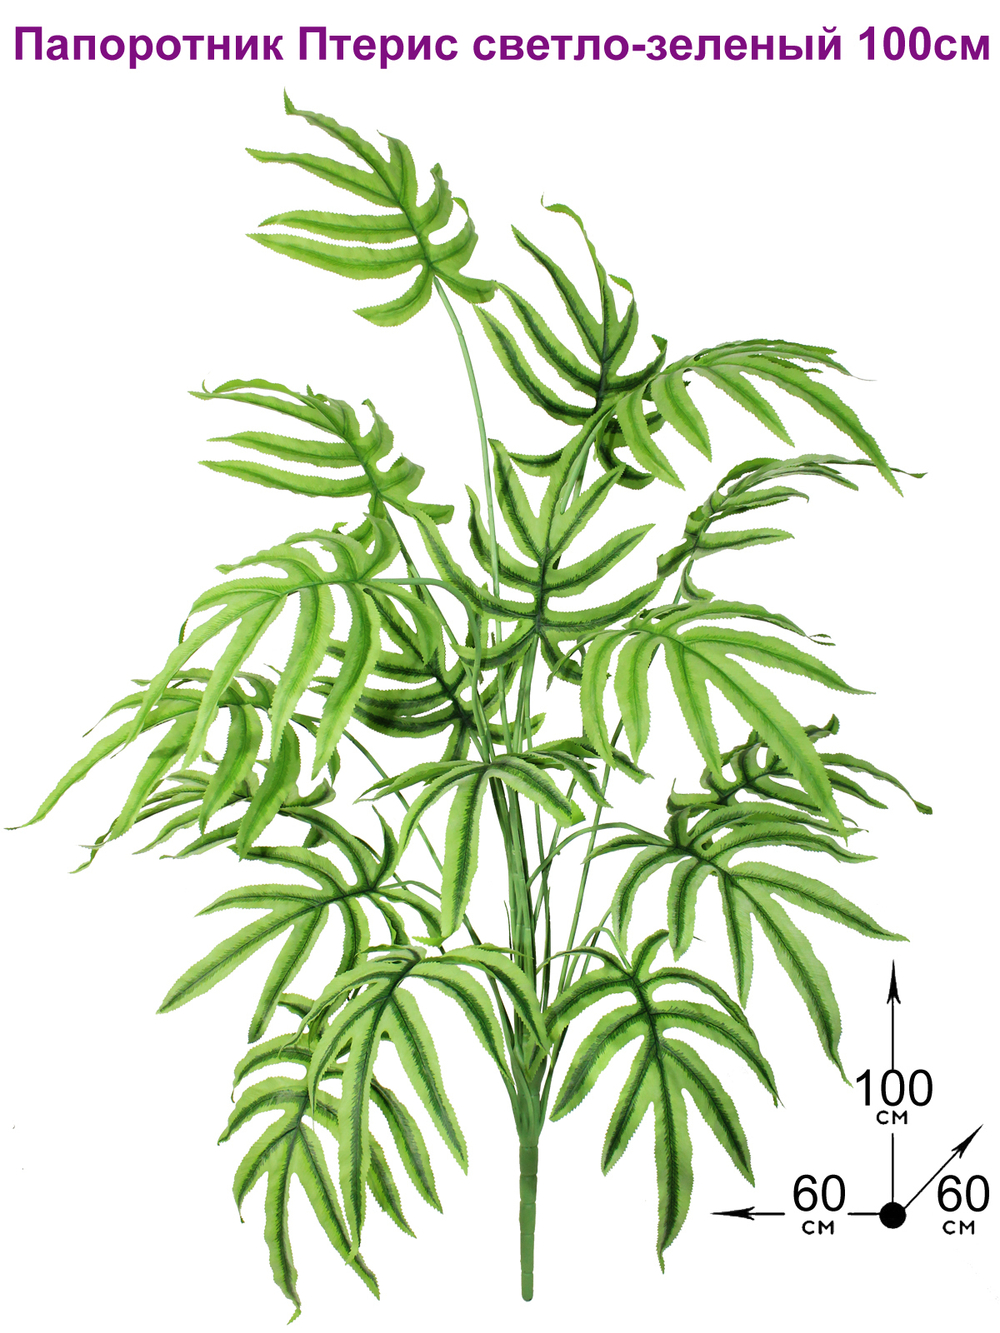 Искусственное растение Папоротник Птерис светло-зеленый 100см